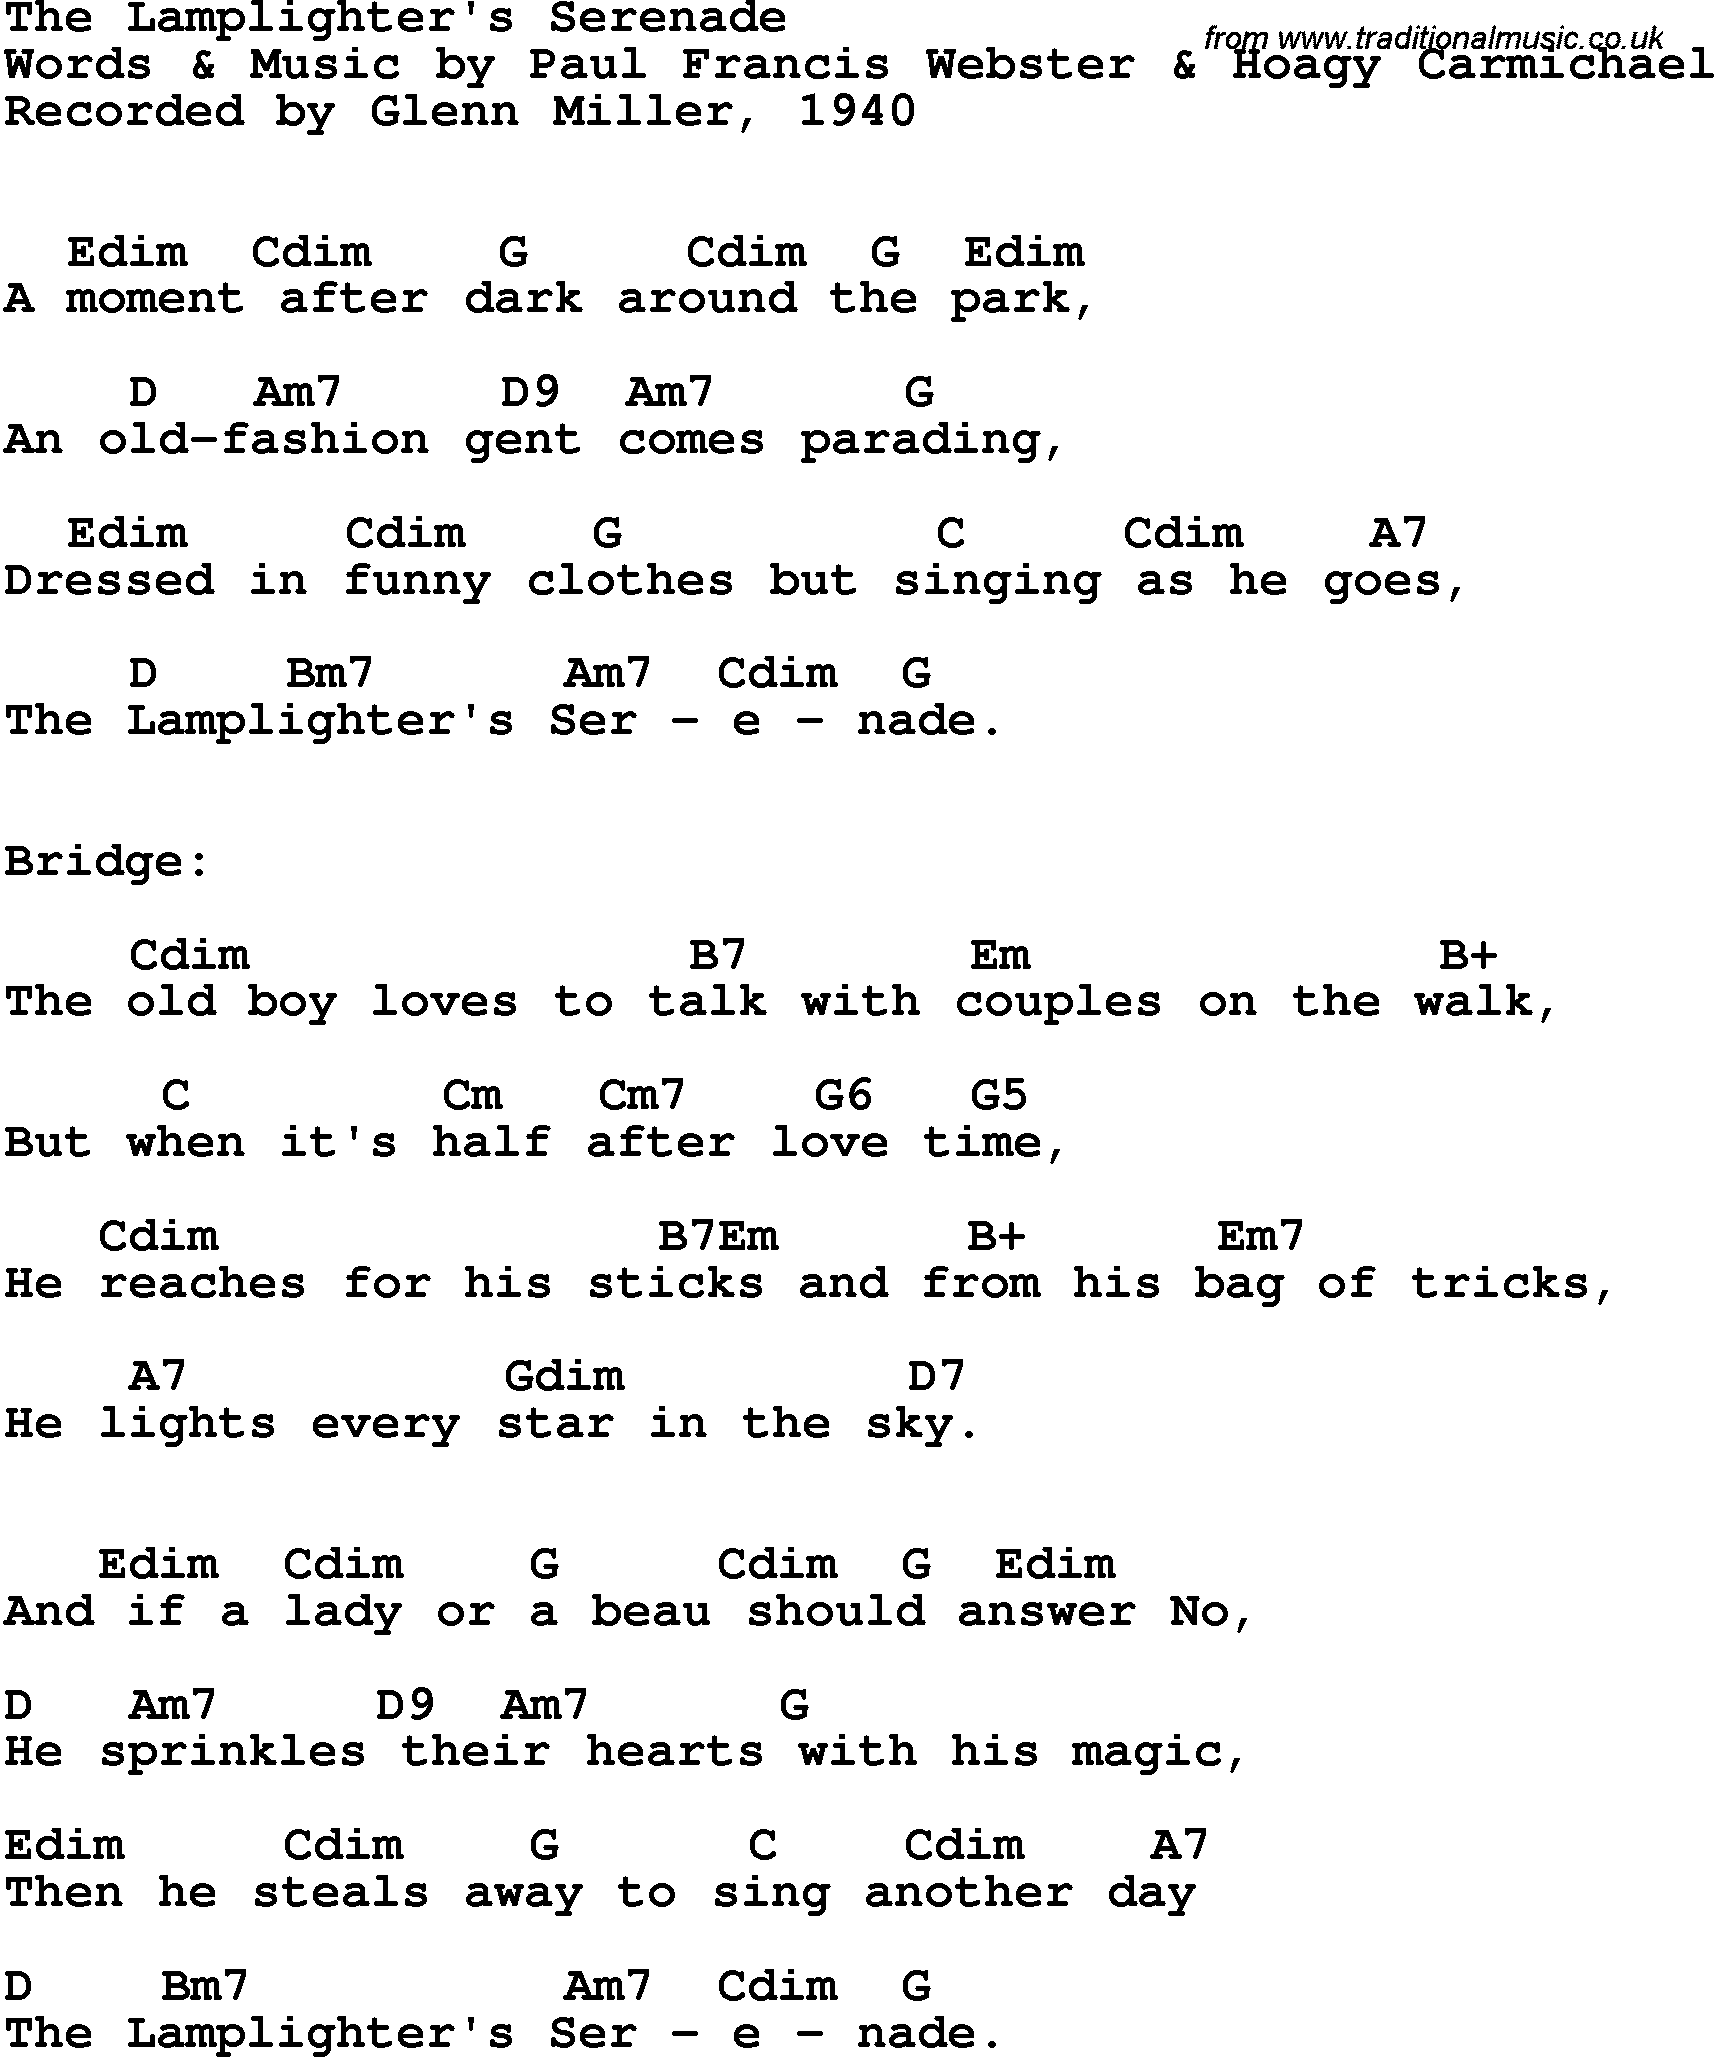 Song Lyrics with guitar chords for Lamplighter's Serenade, The - Glenn Miller, 1940